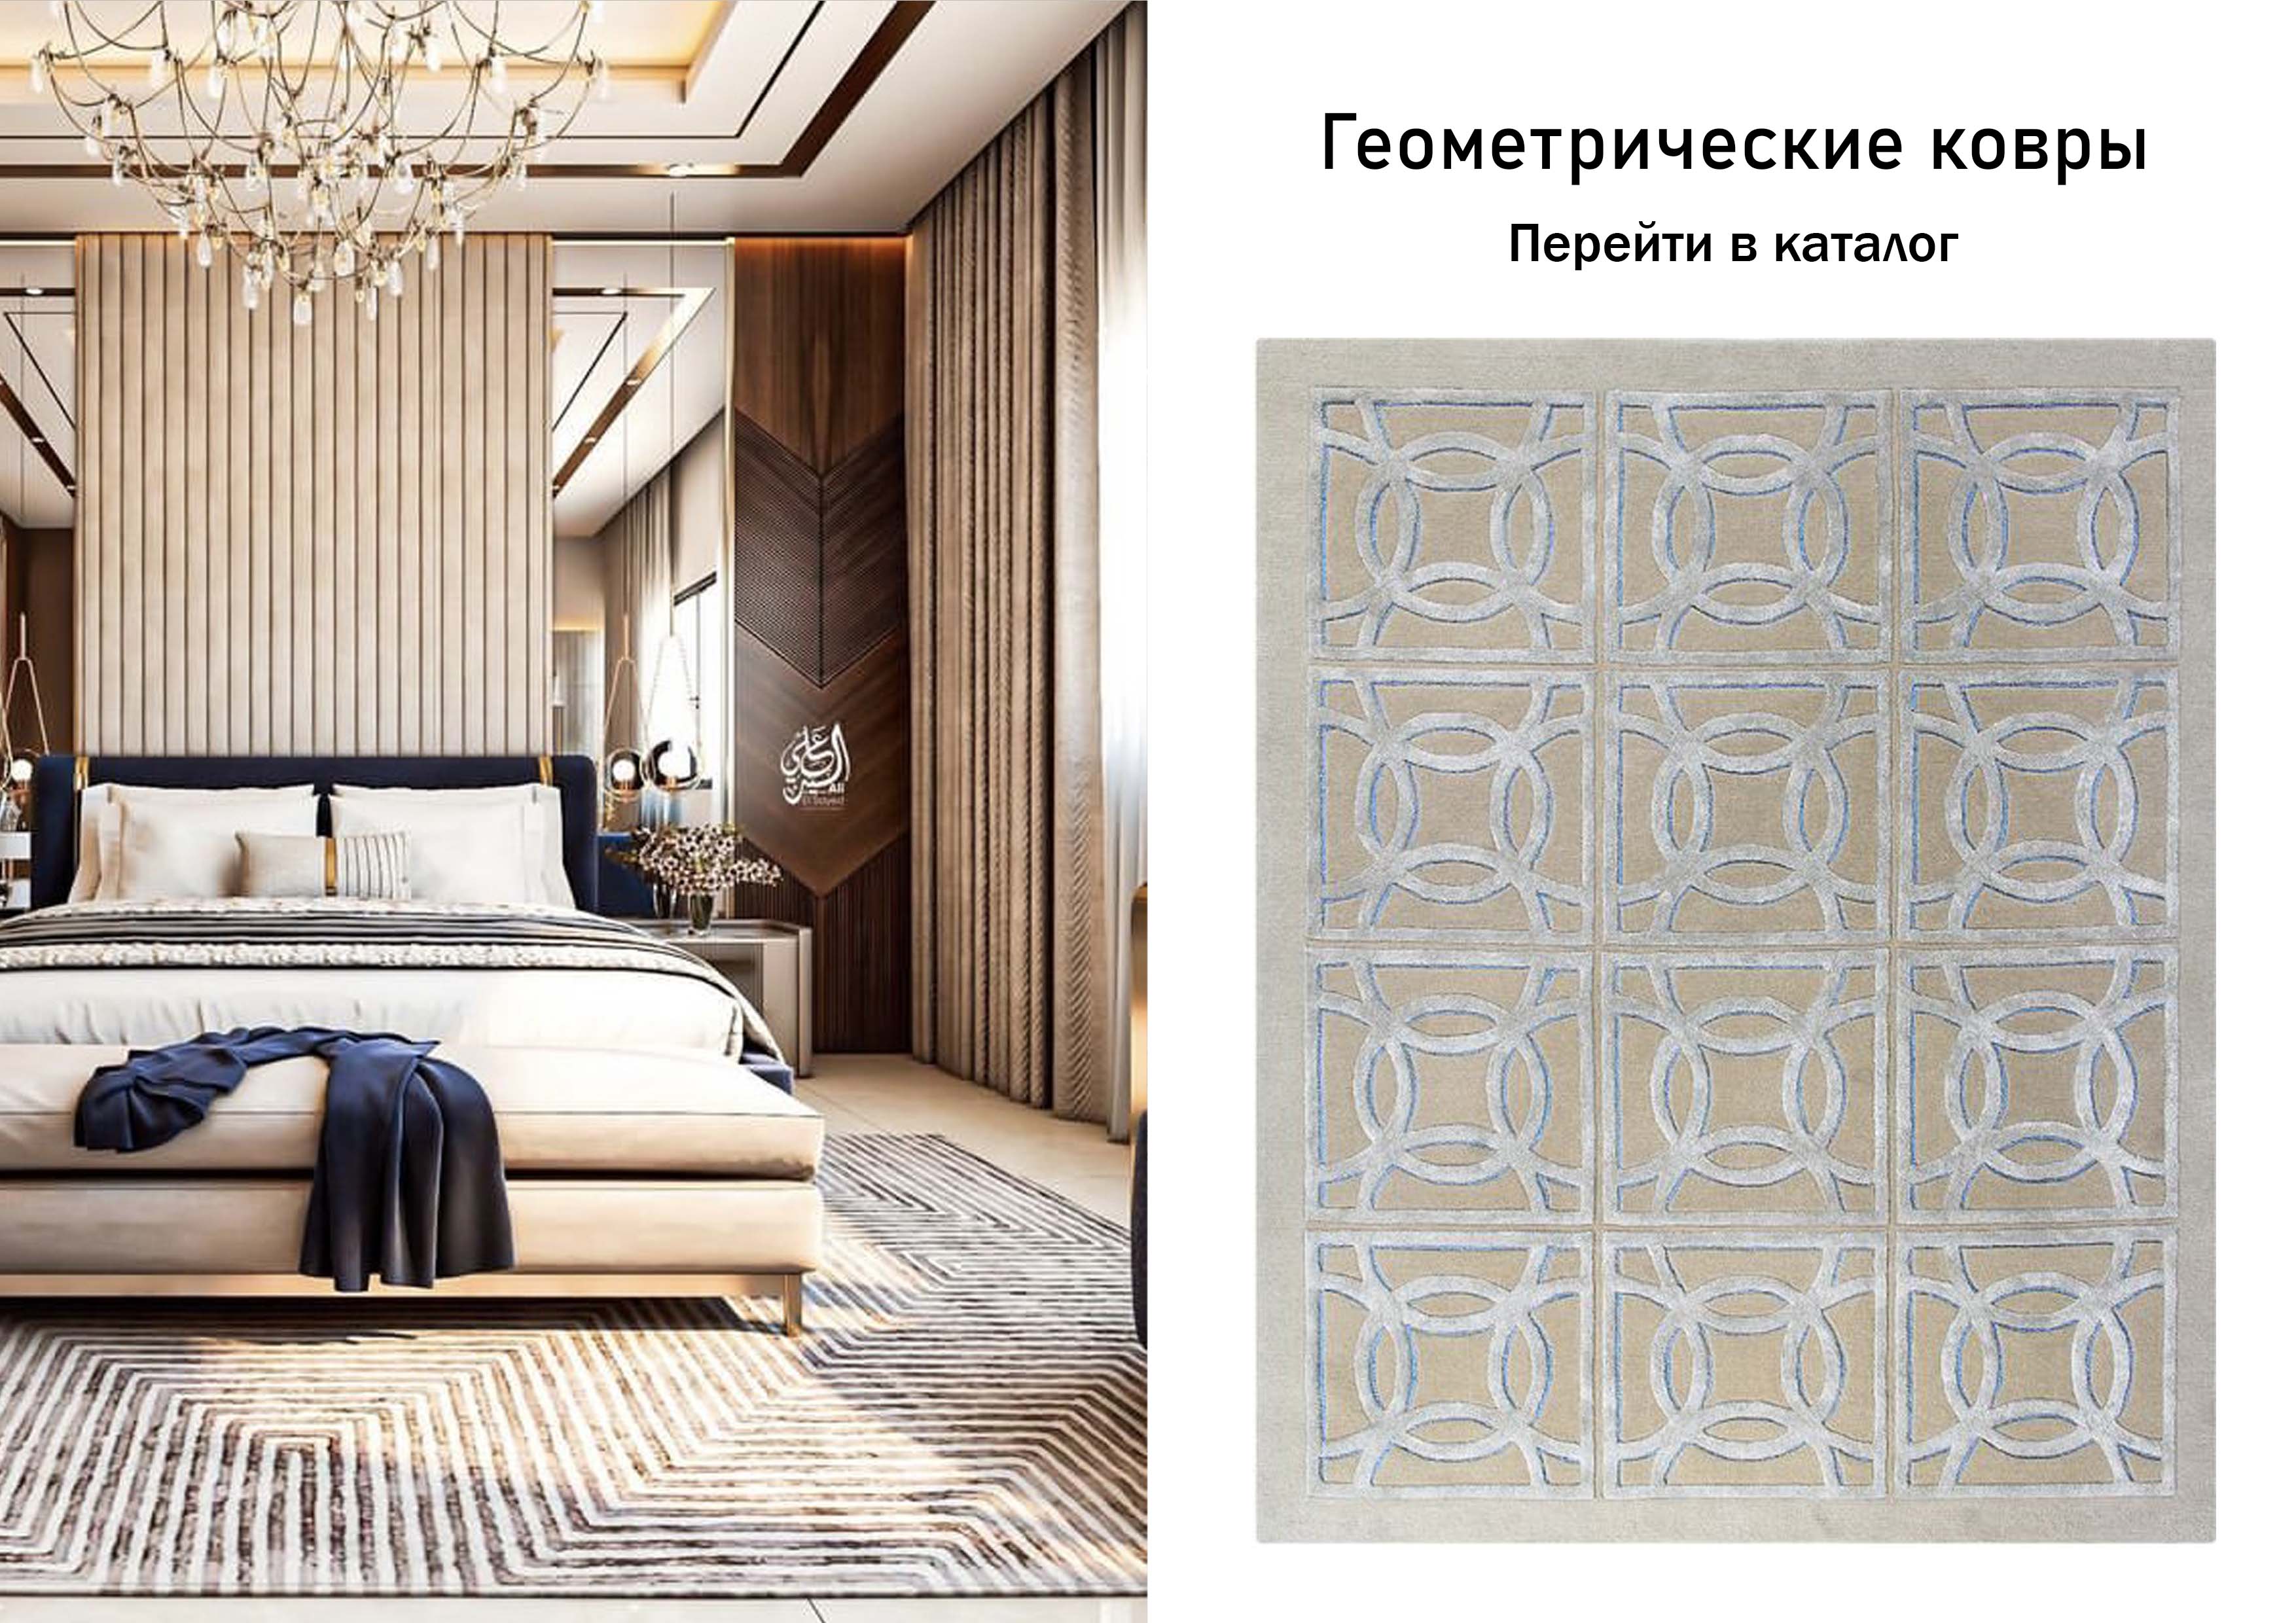 Купить ковры с геометрическим дизайном